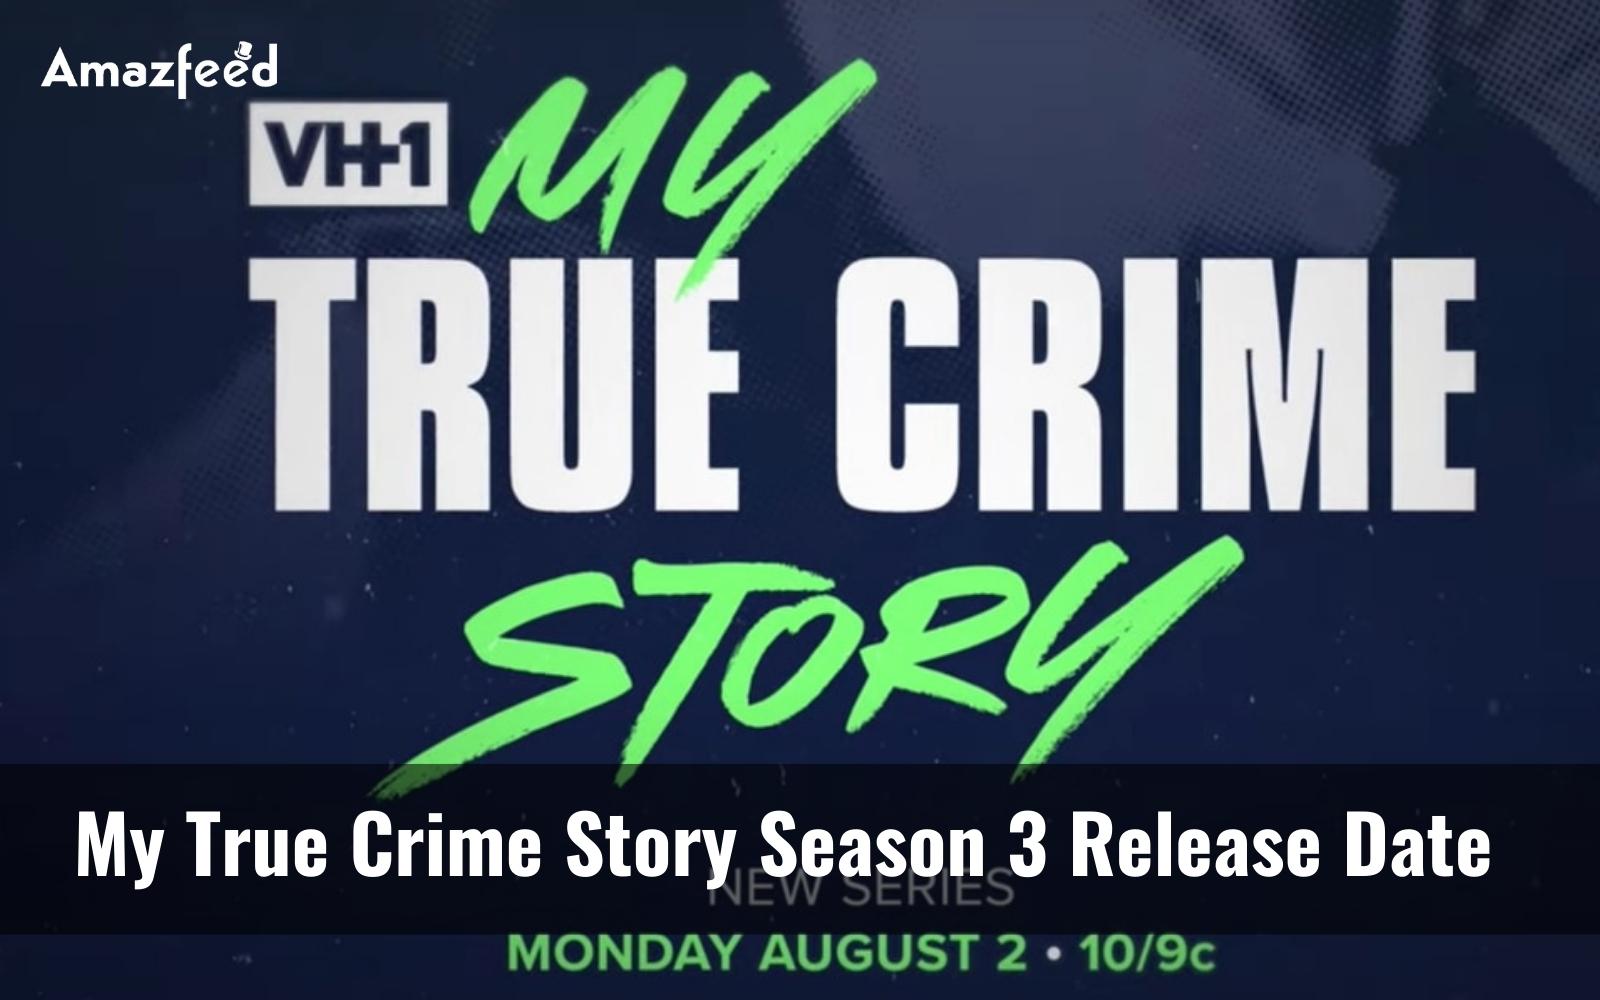 My True Crime Story season 3 release date